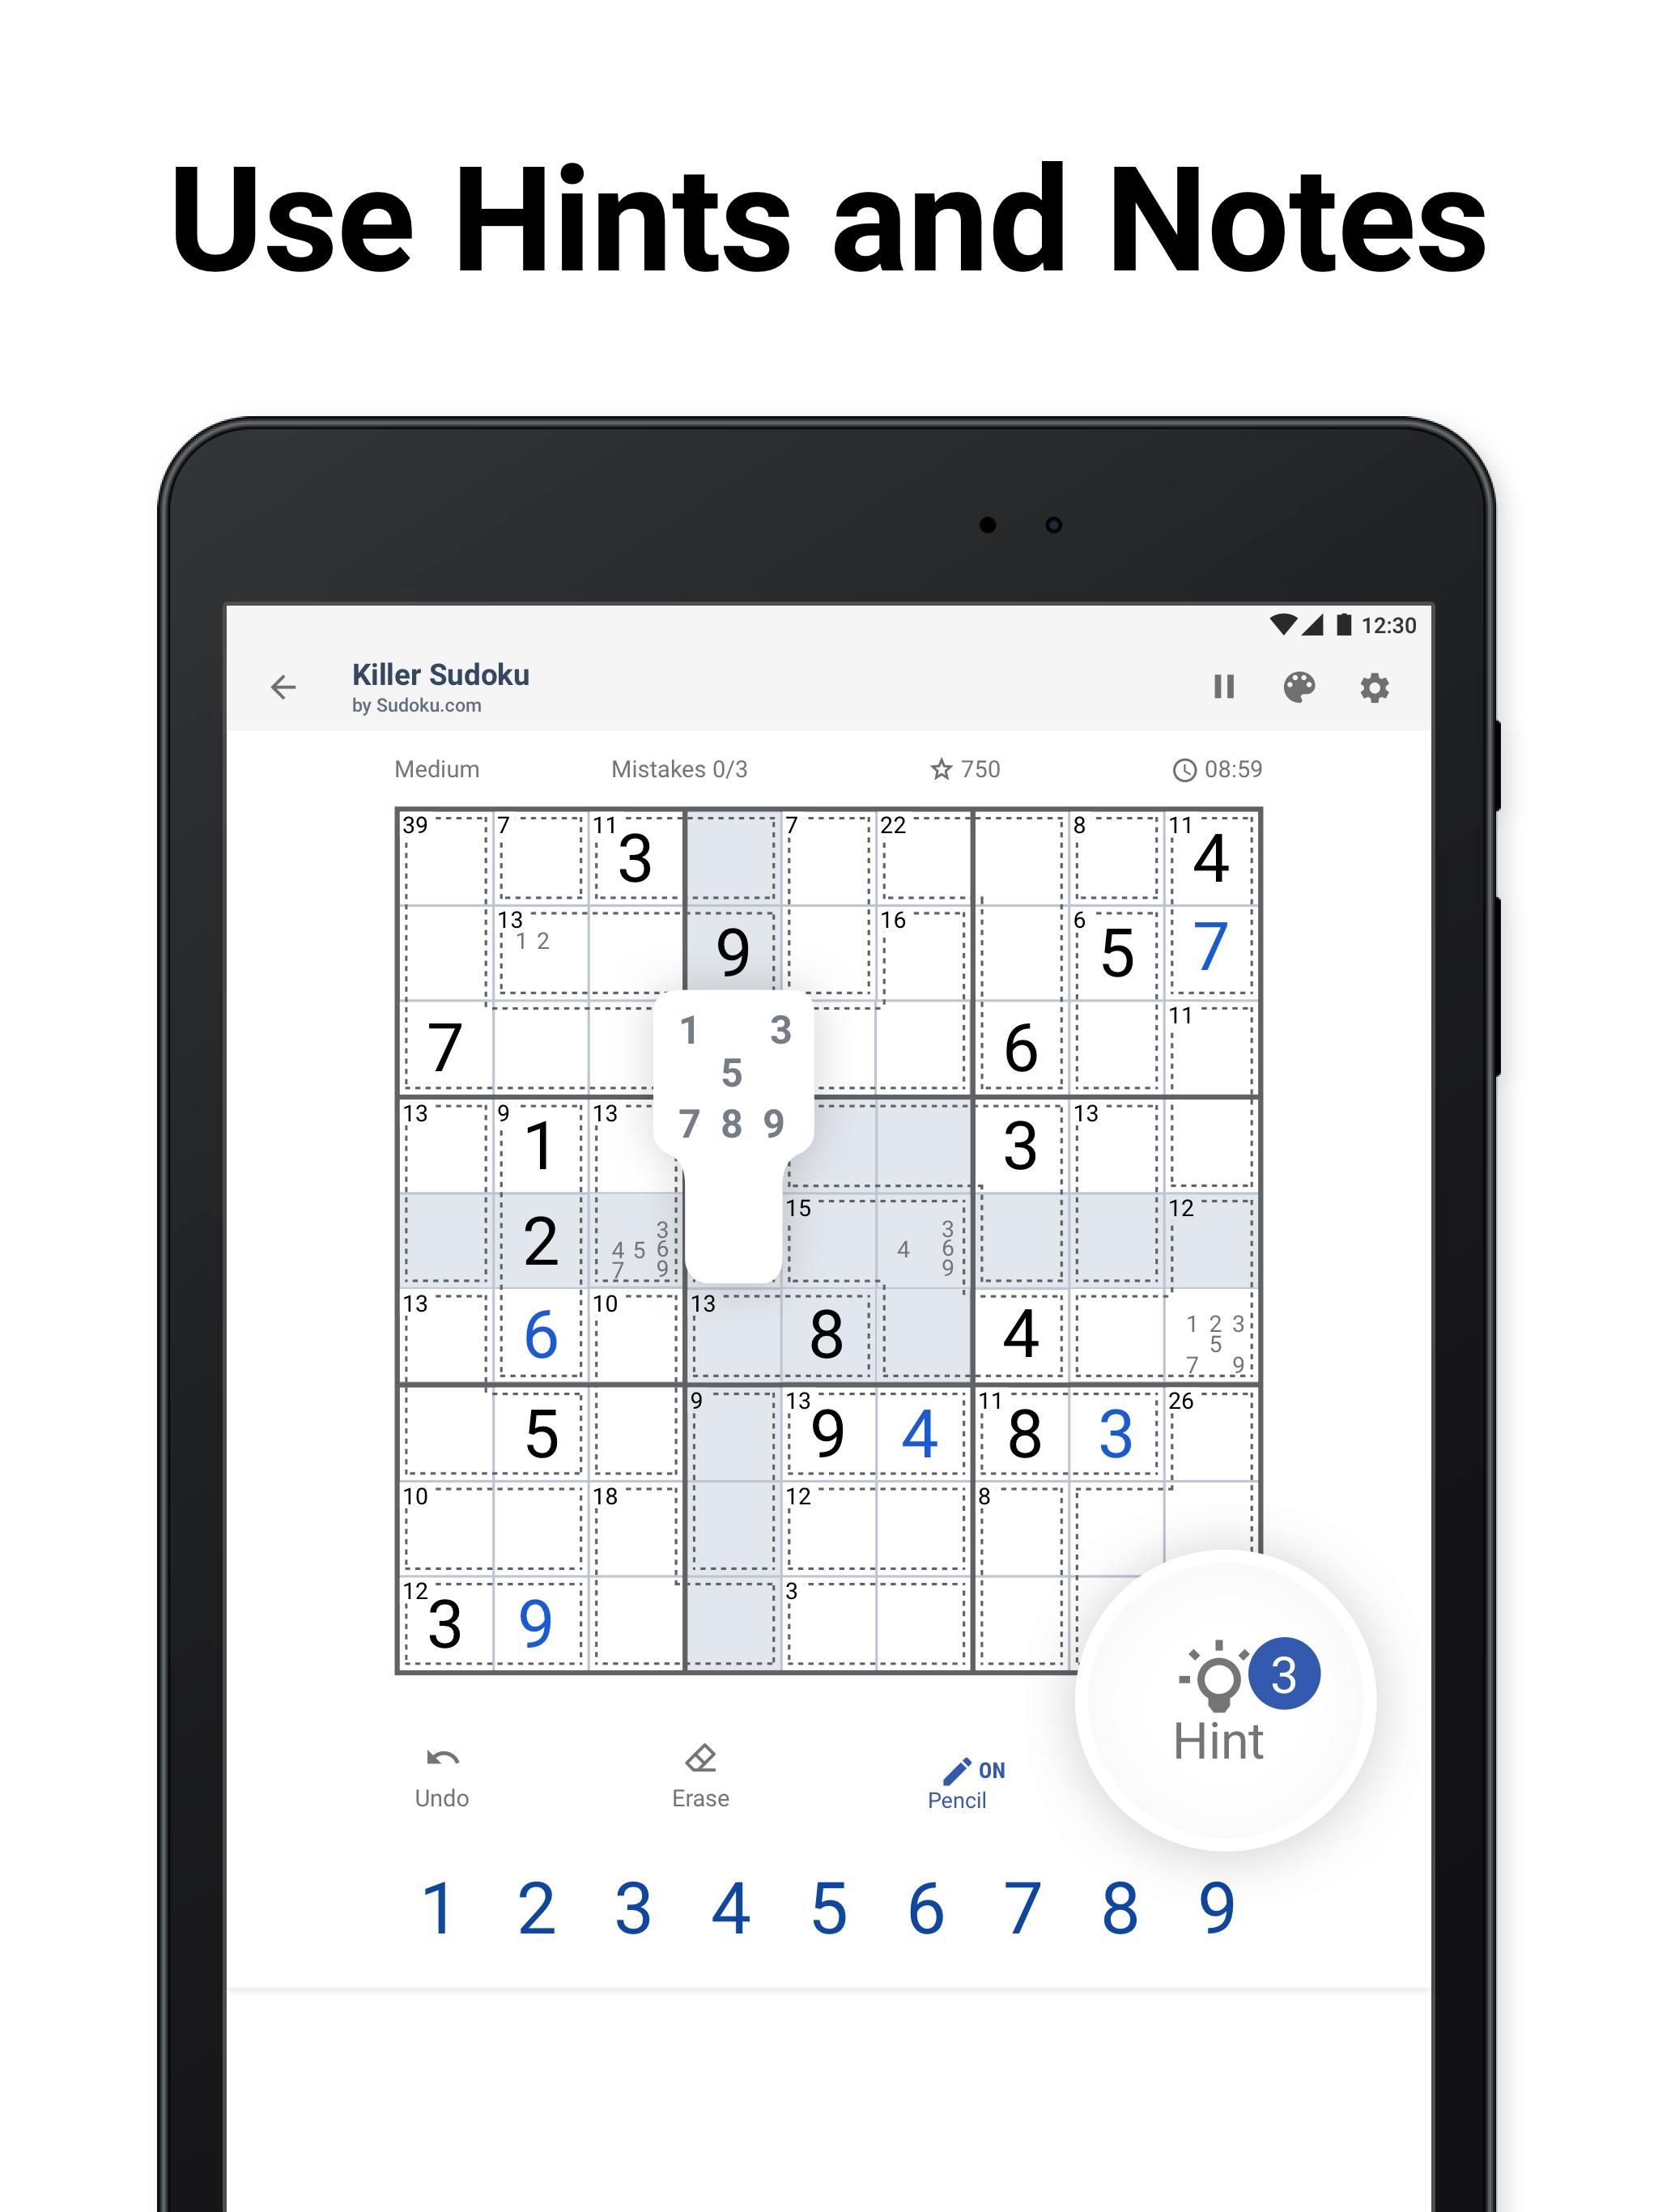 Killer Sudoku by Sudoku.com - Free Logic Puzzles 1.2.1 Screenshot 23